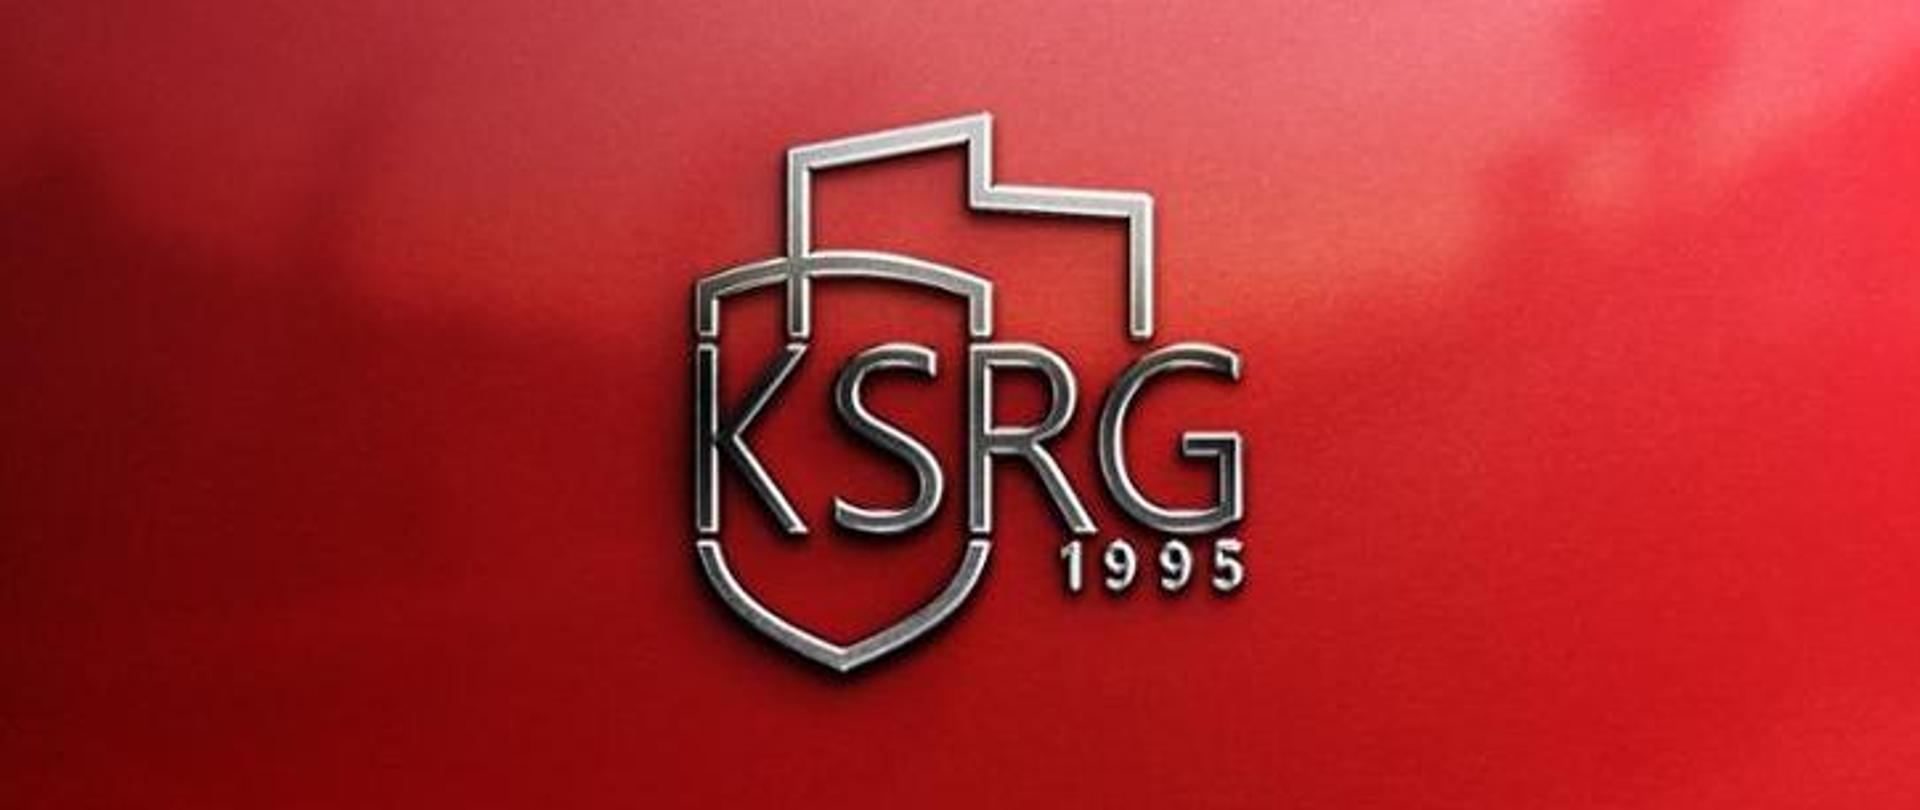 Napis na czerwonym tle KSRG 1995